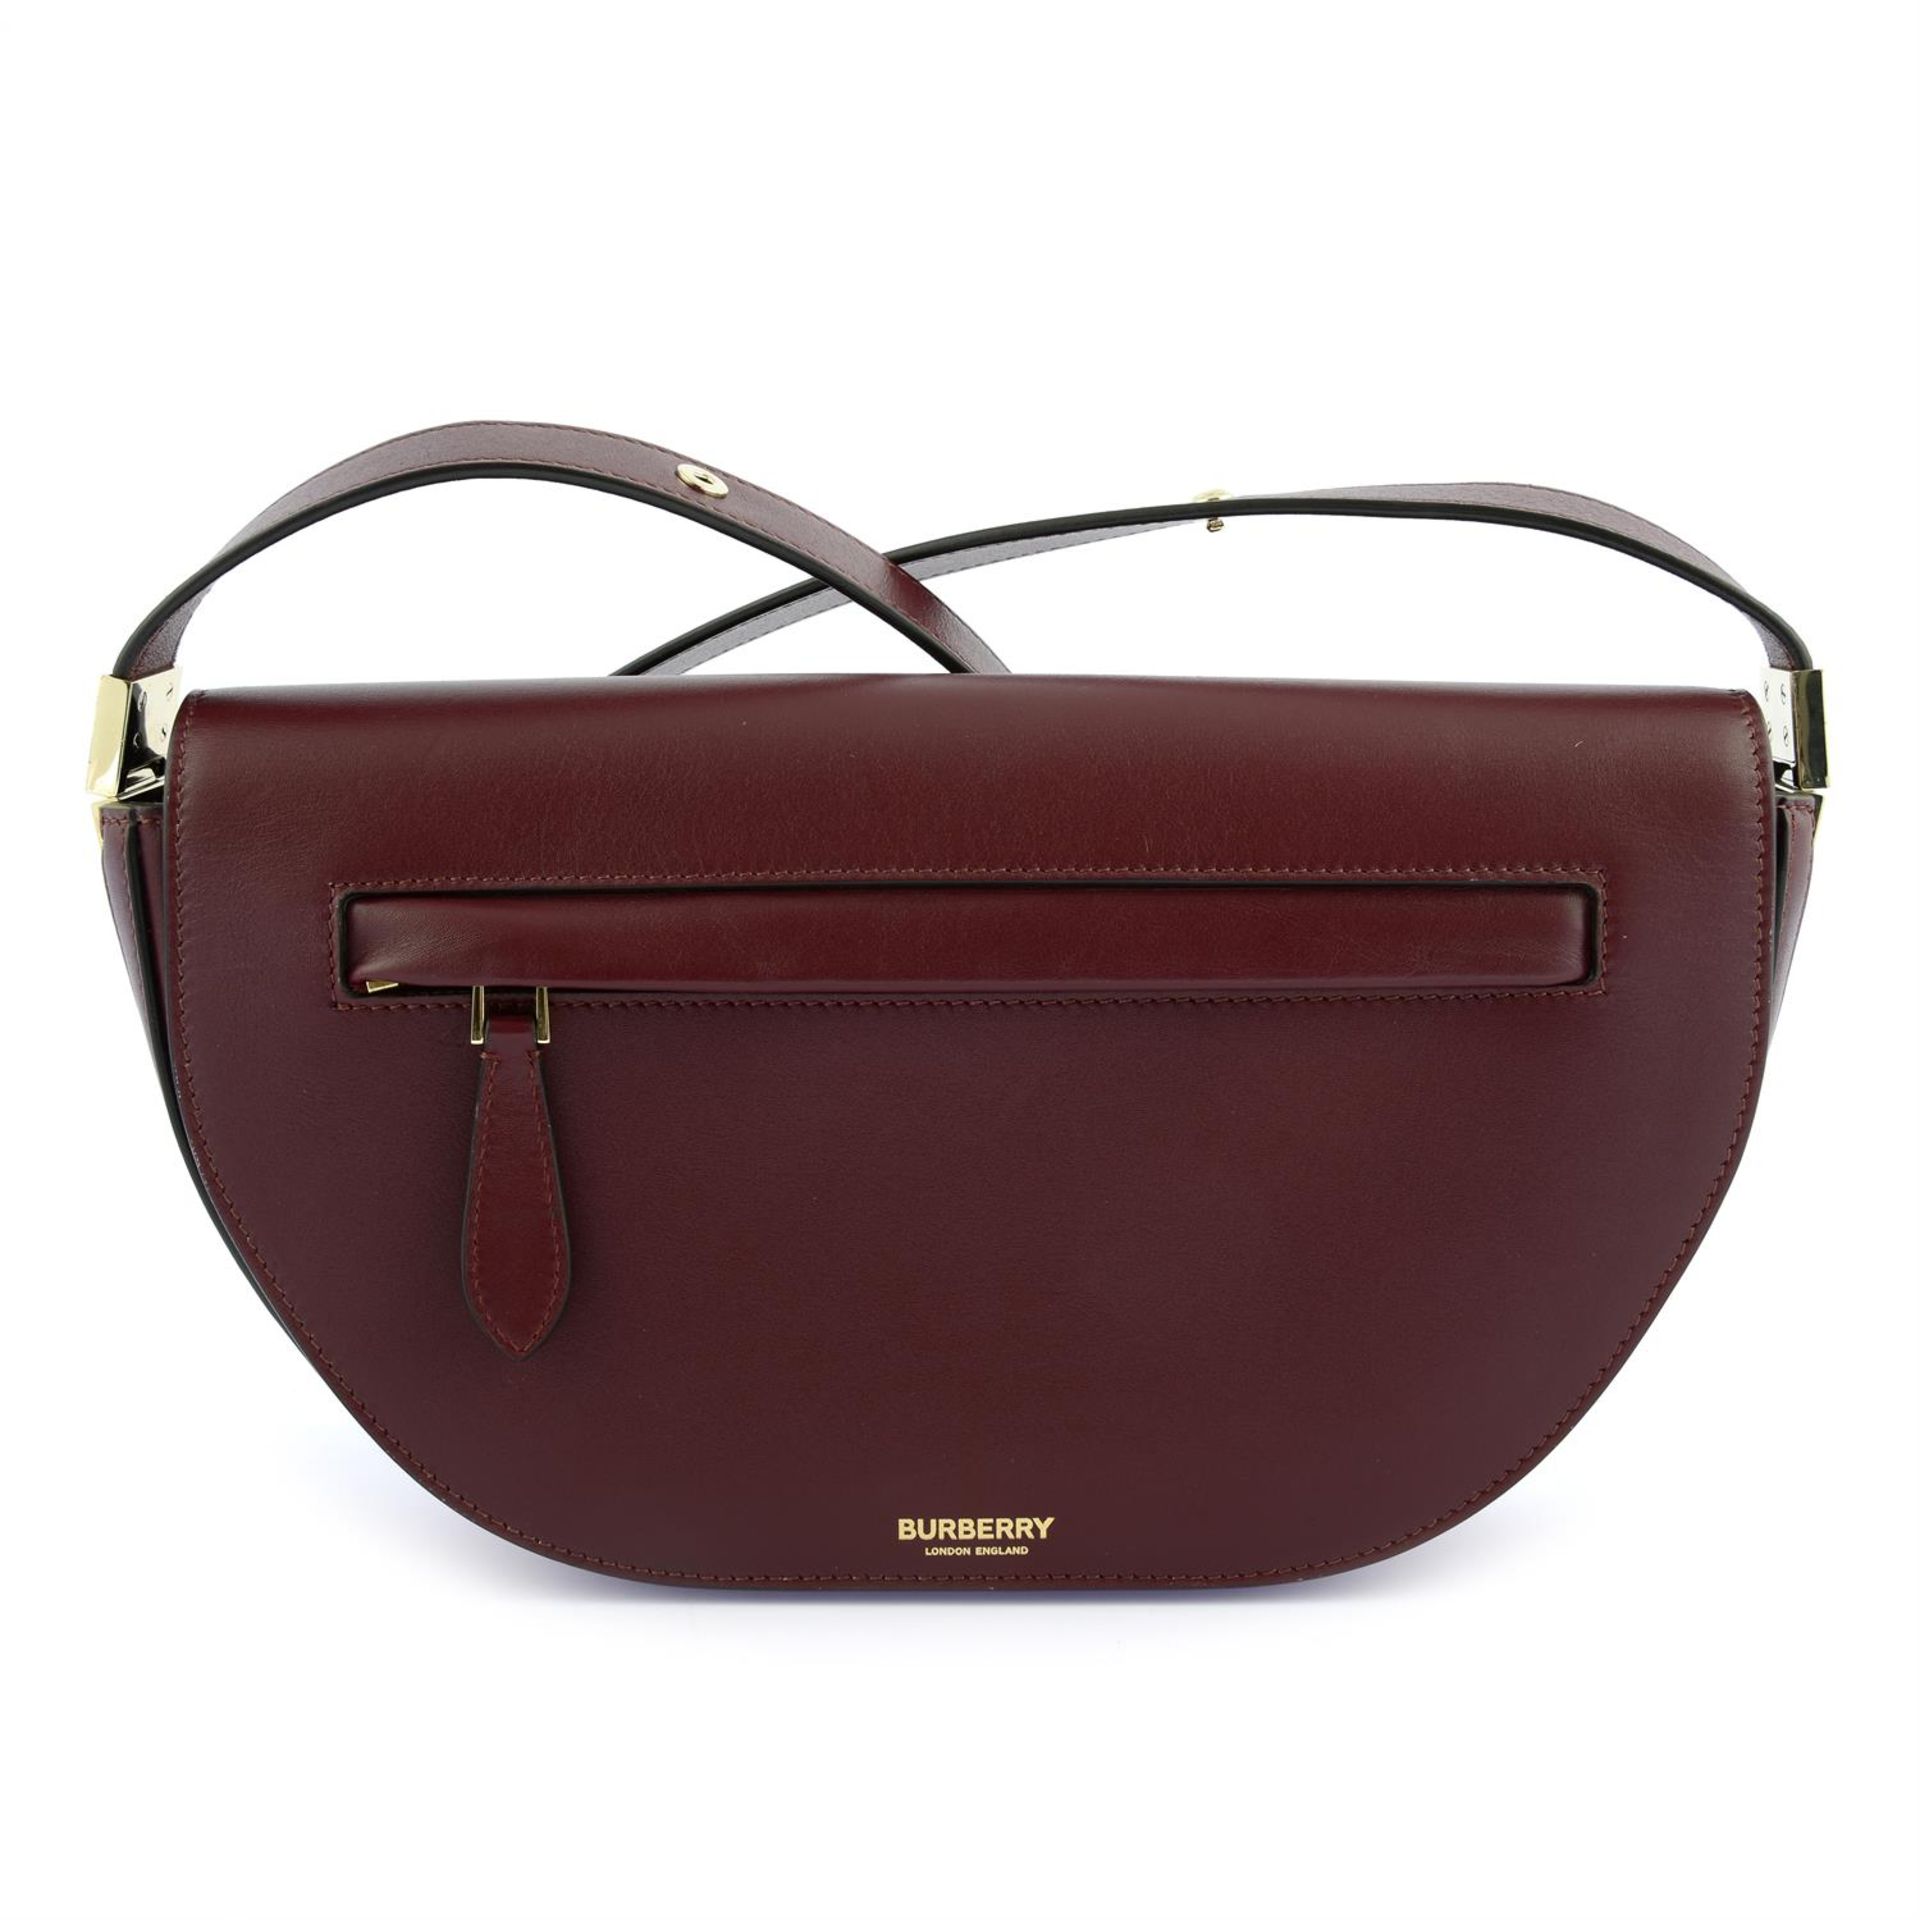 BURBERRY- a burgundy leather Olympia handbag.